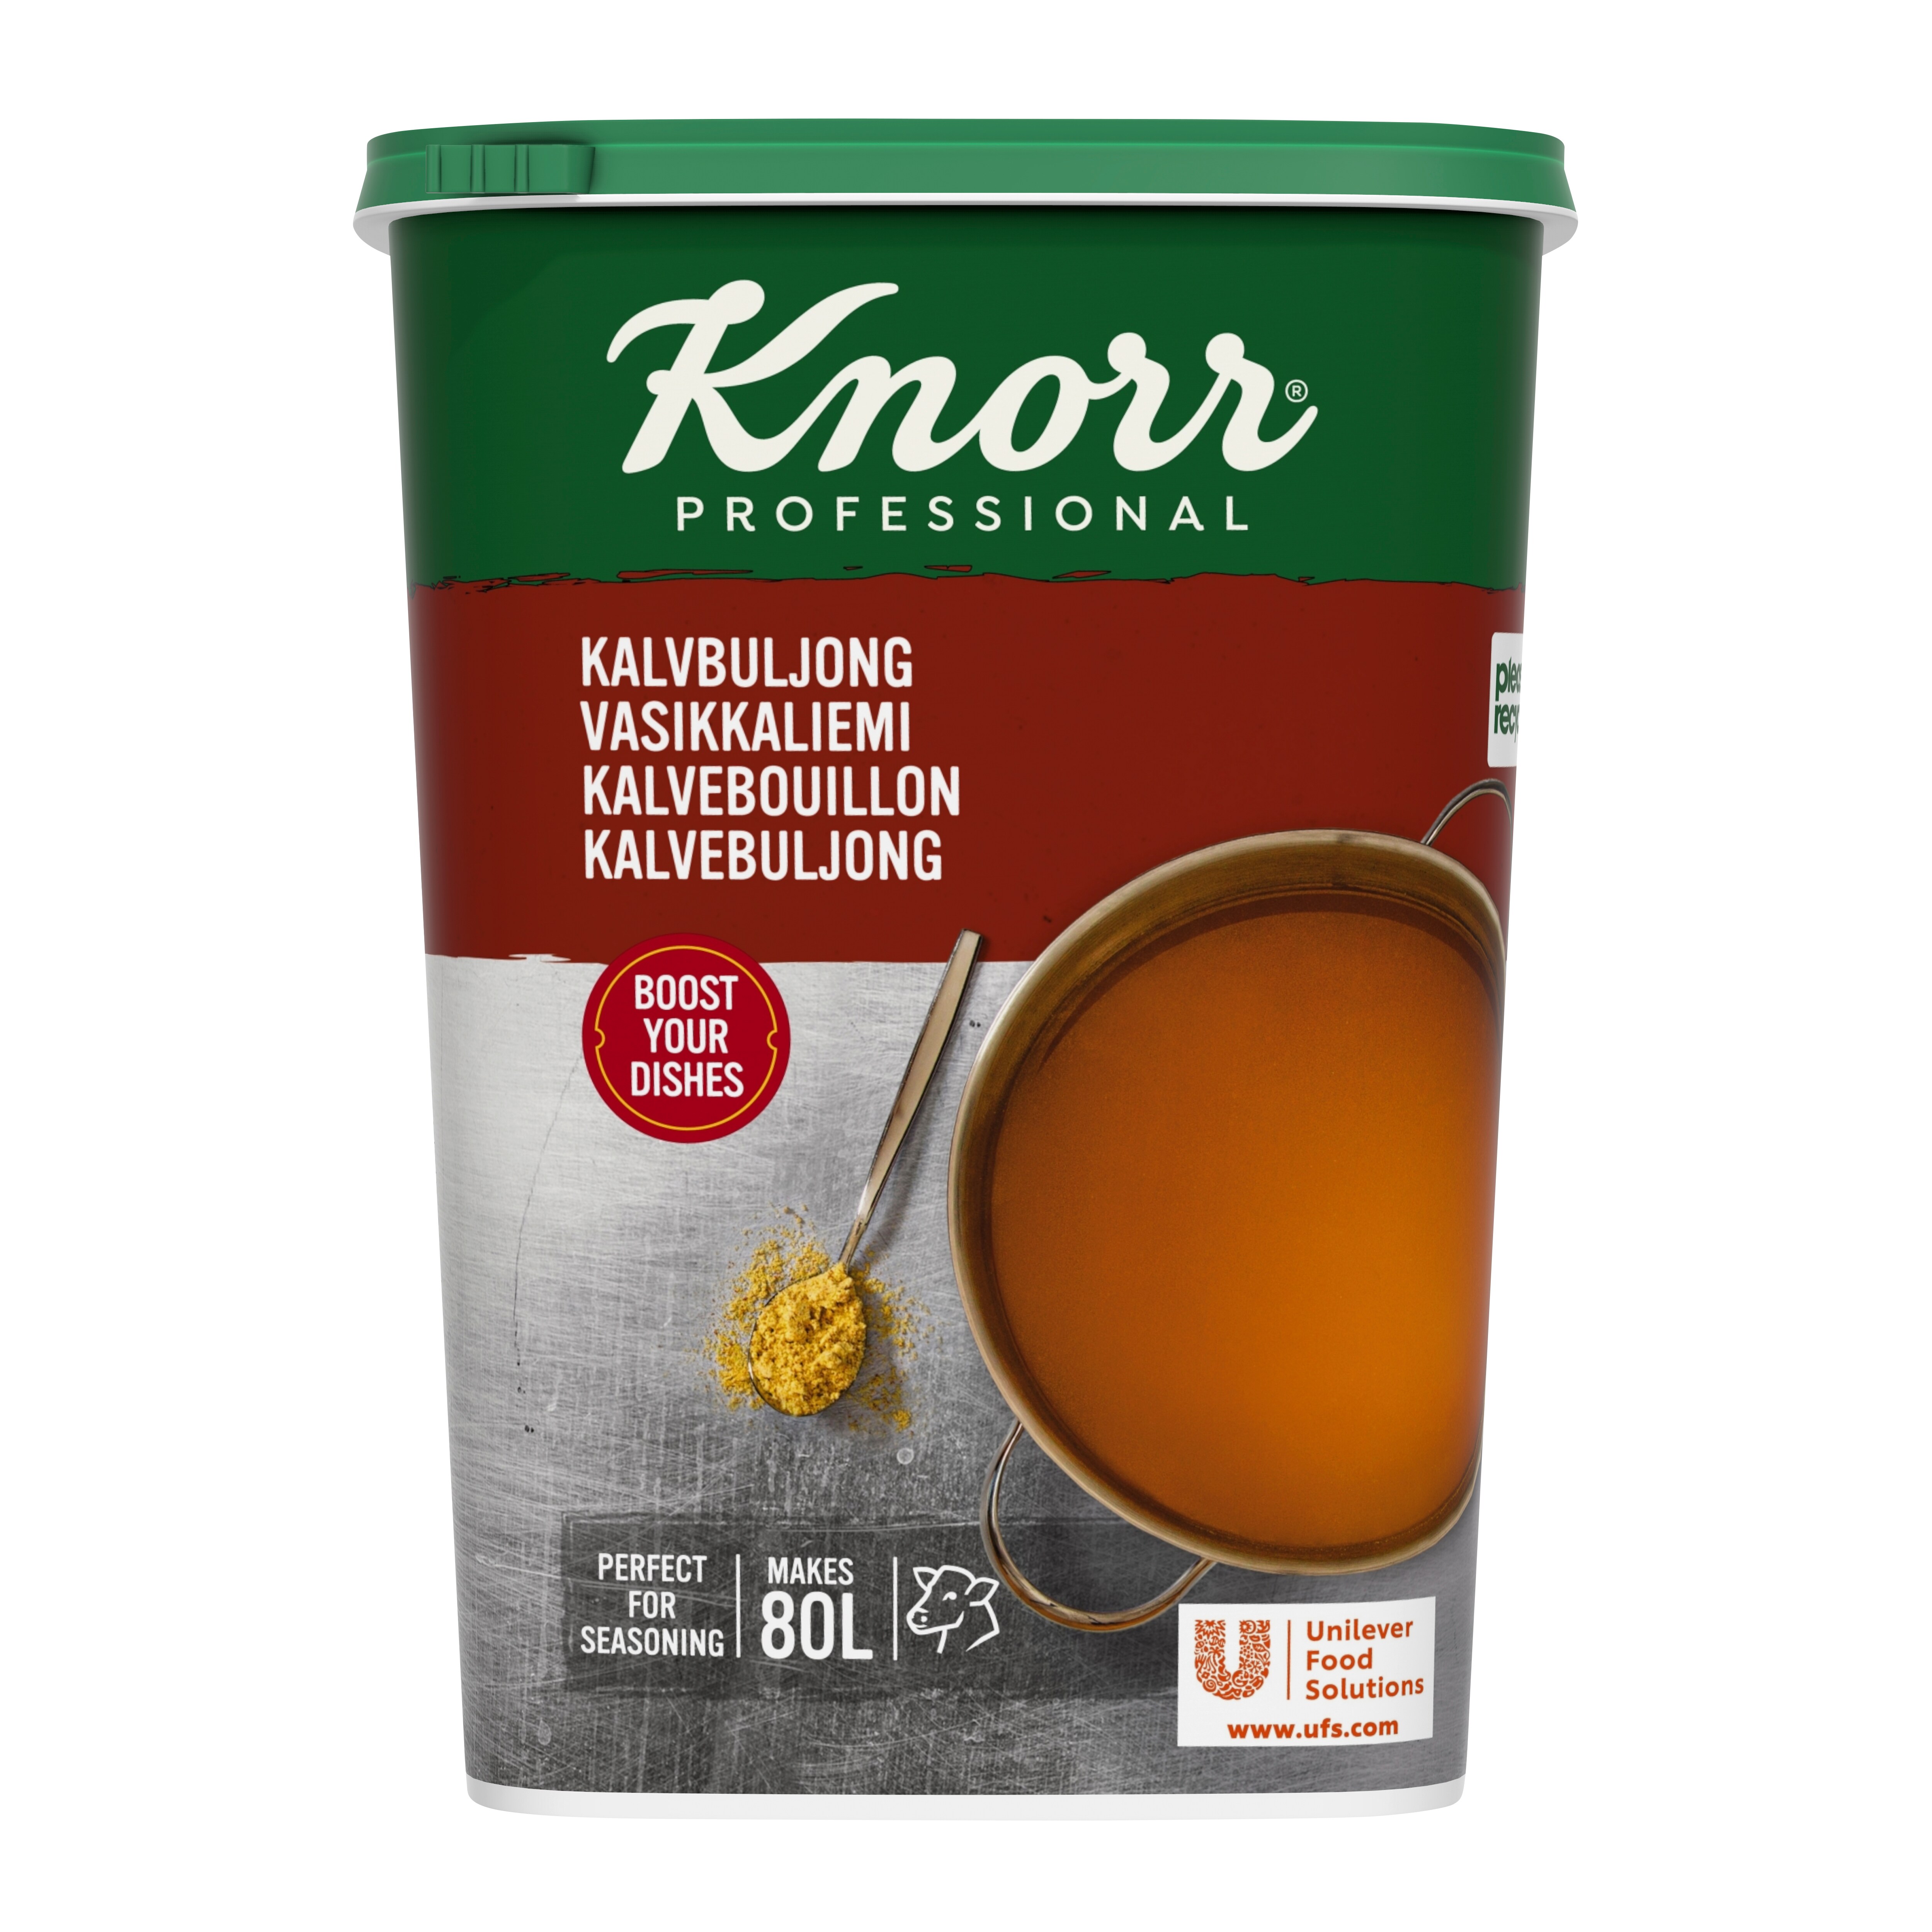 Knorr Kalvbuljong, pulver 3 x 1,2 kg